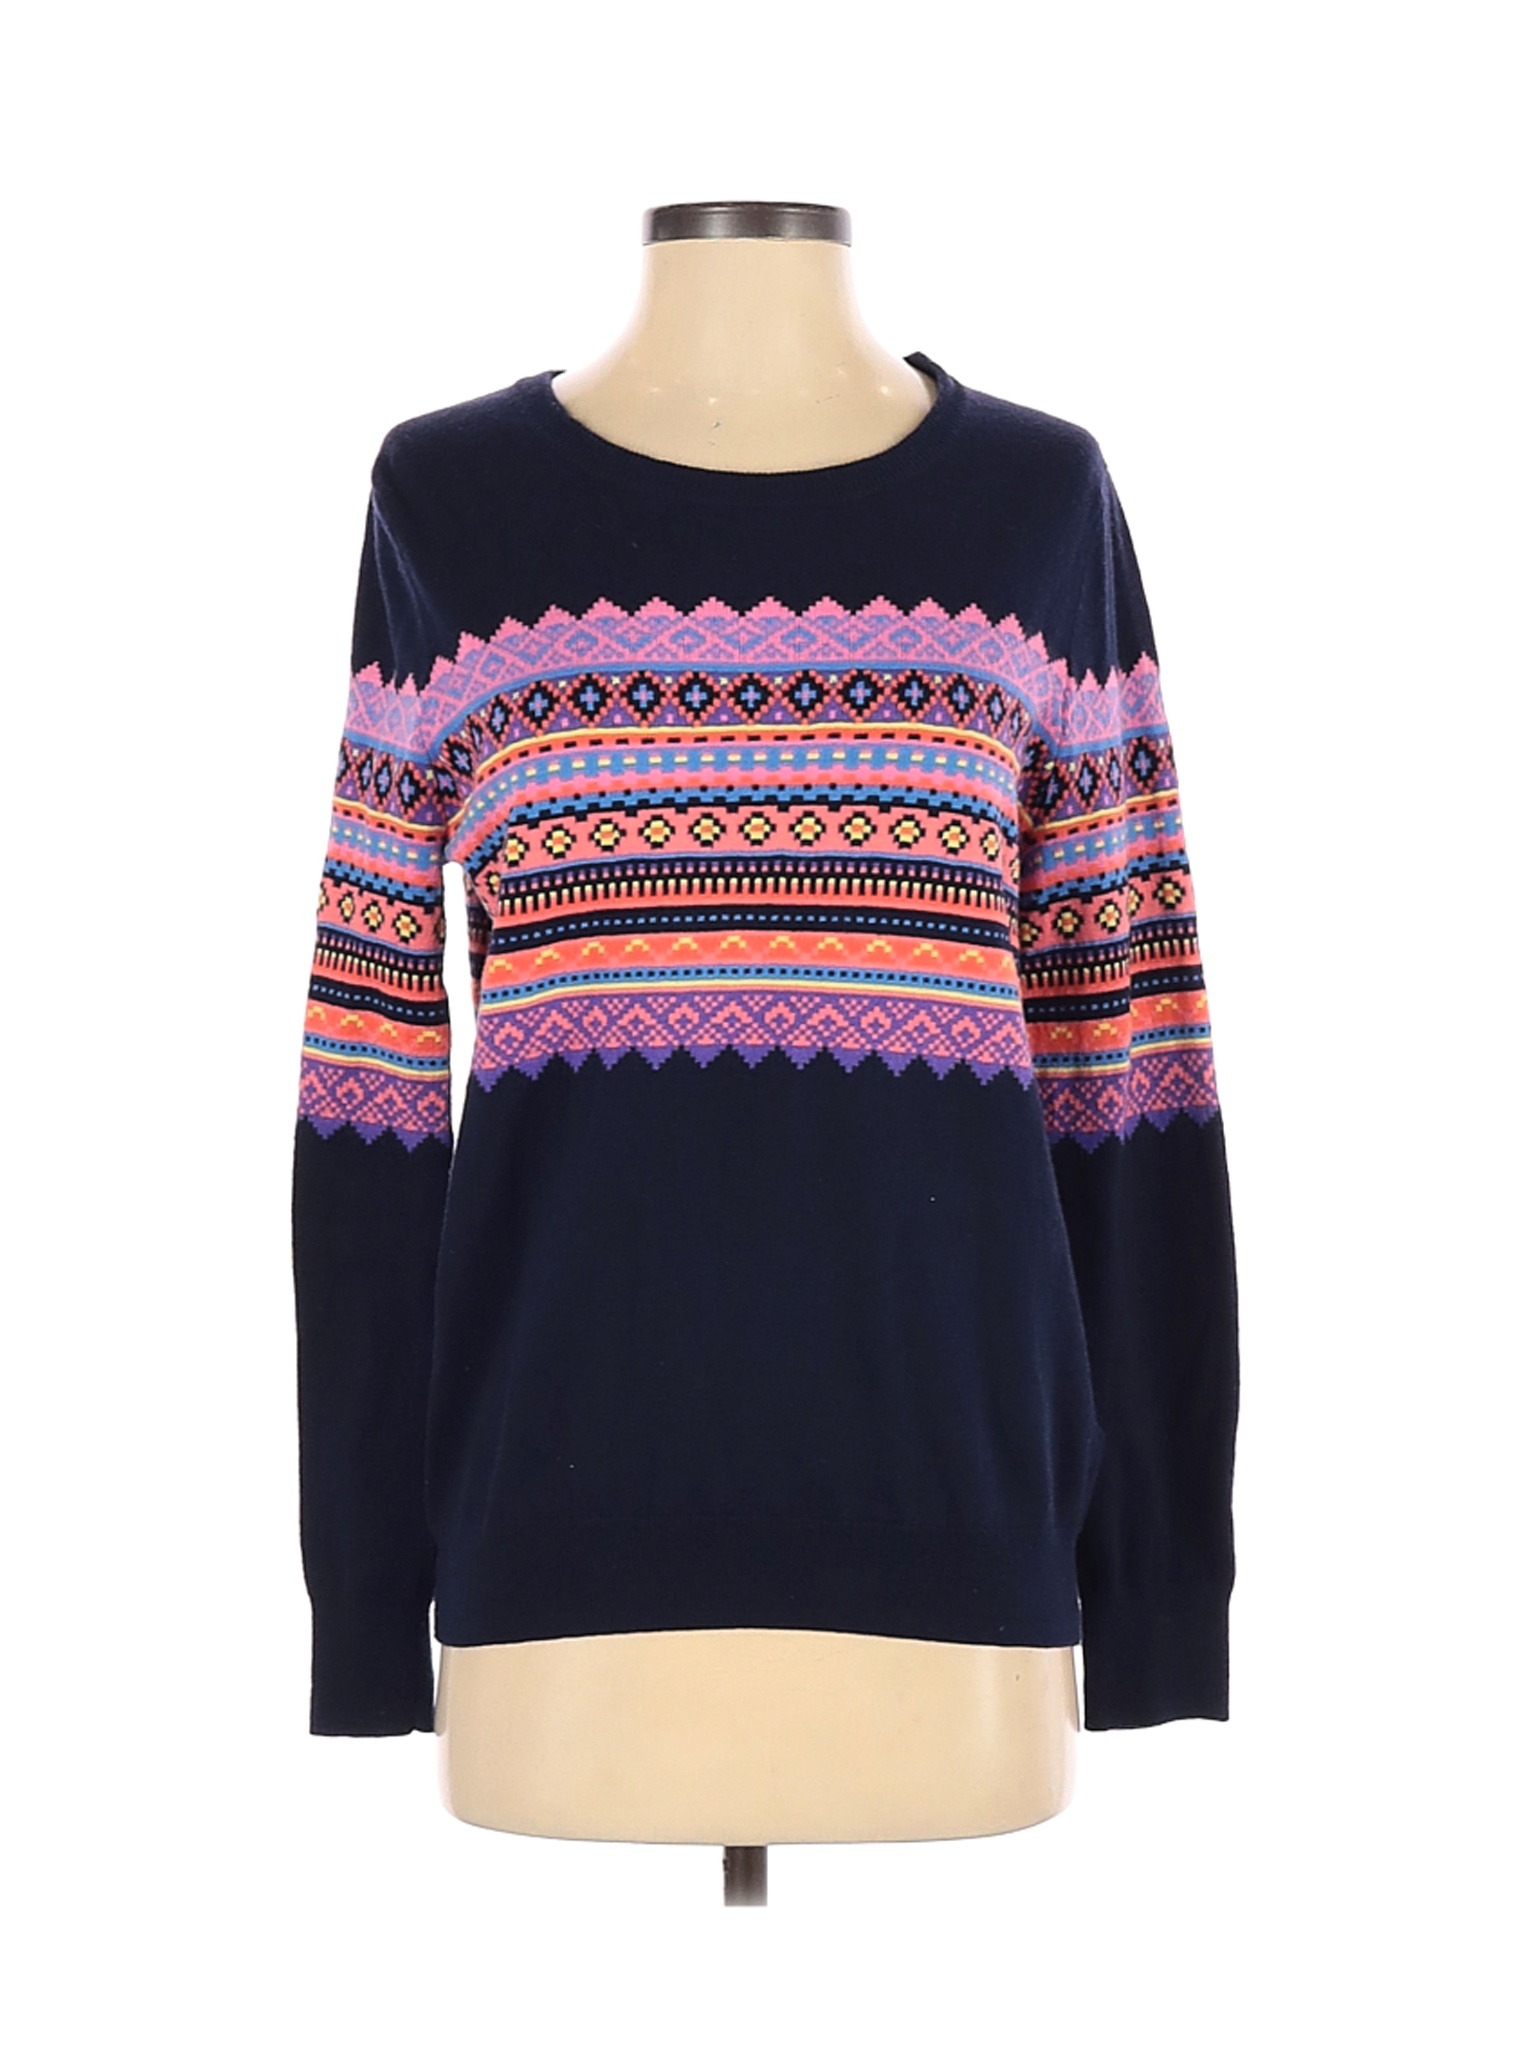 Gap Women Blue Pullover Sweater S | eBay